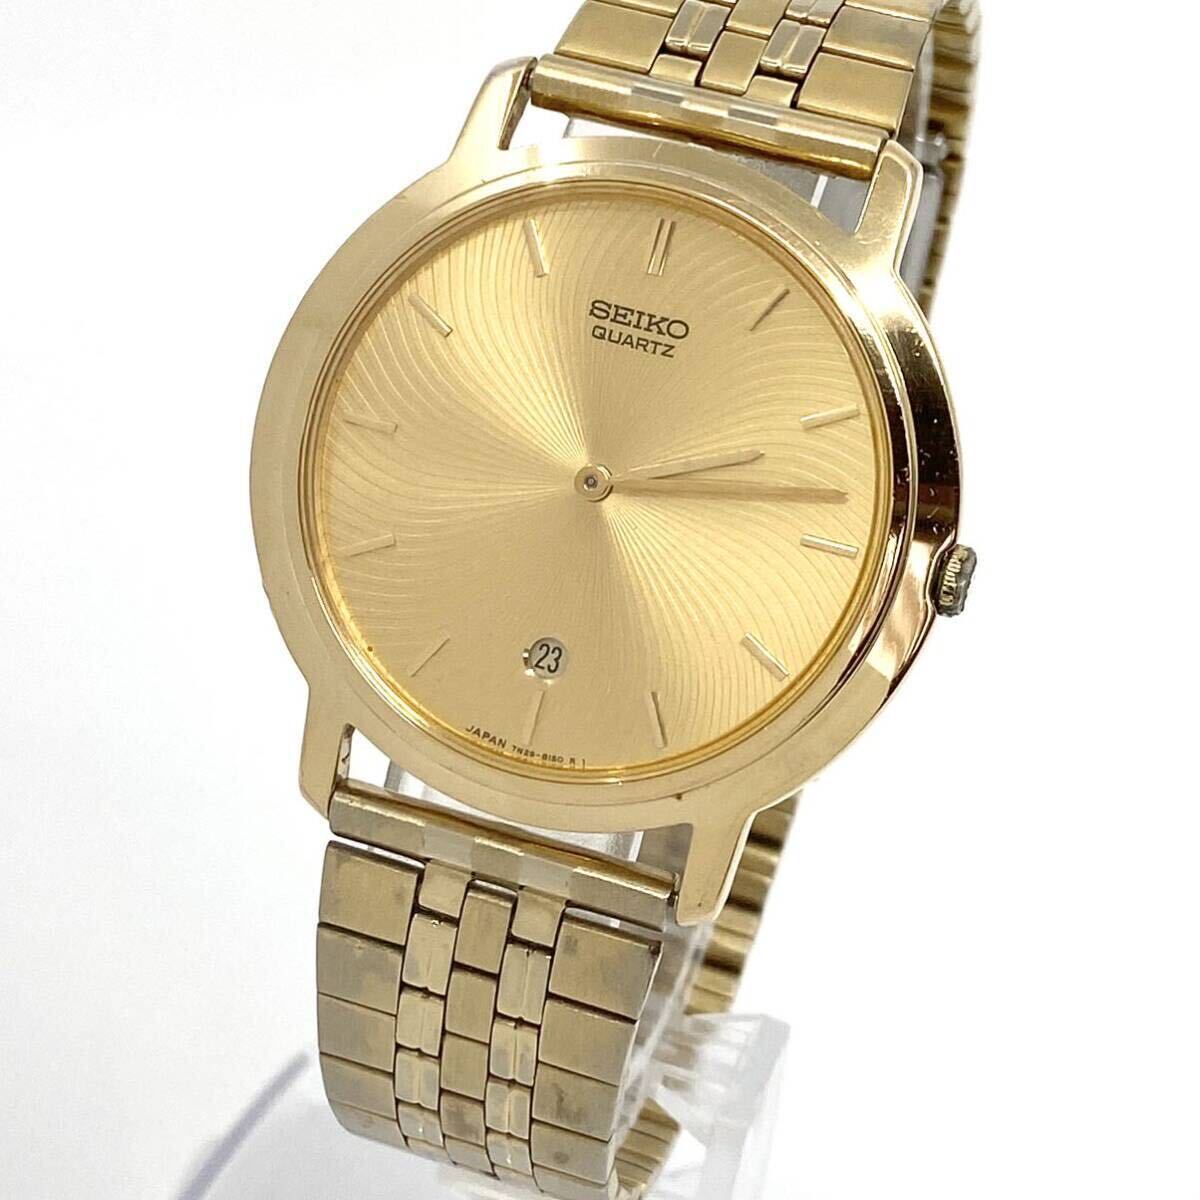 SEIKO 腕時計 デイト 7N29-8080 ラウンド バーインデックス 2針 クォーツ quartz ゴールド 金 セイコー Y805